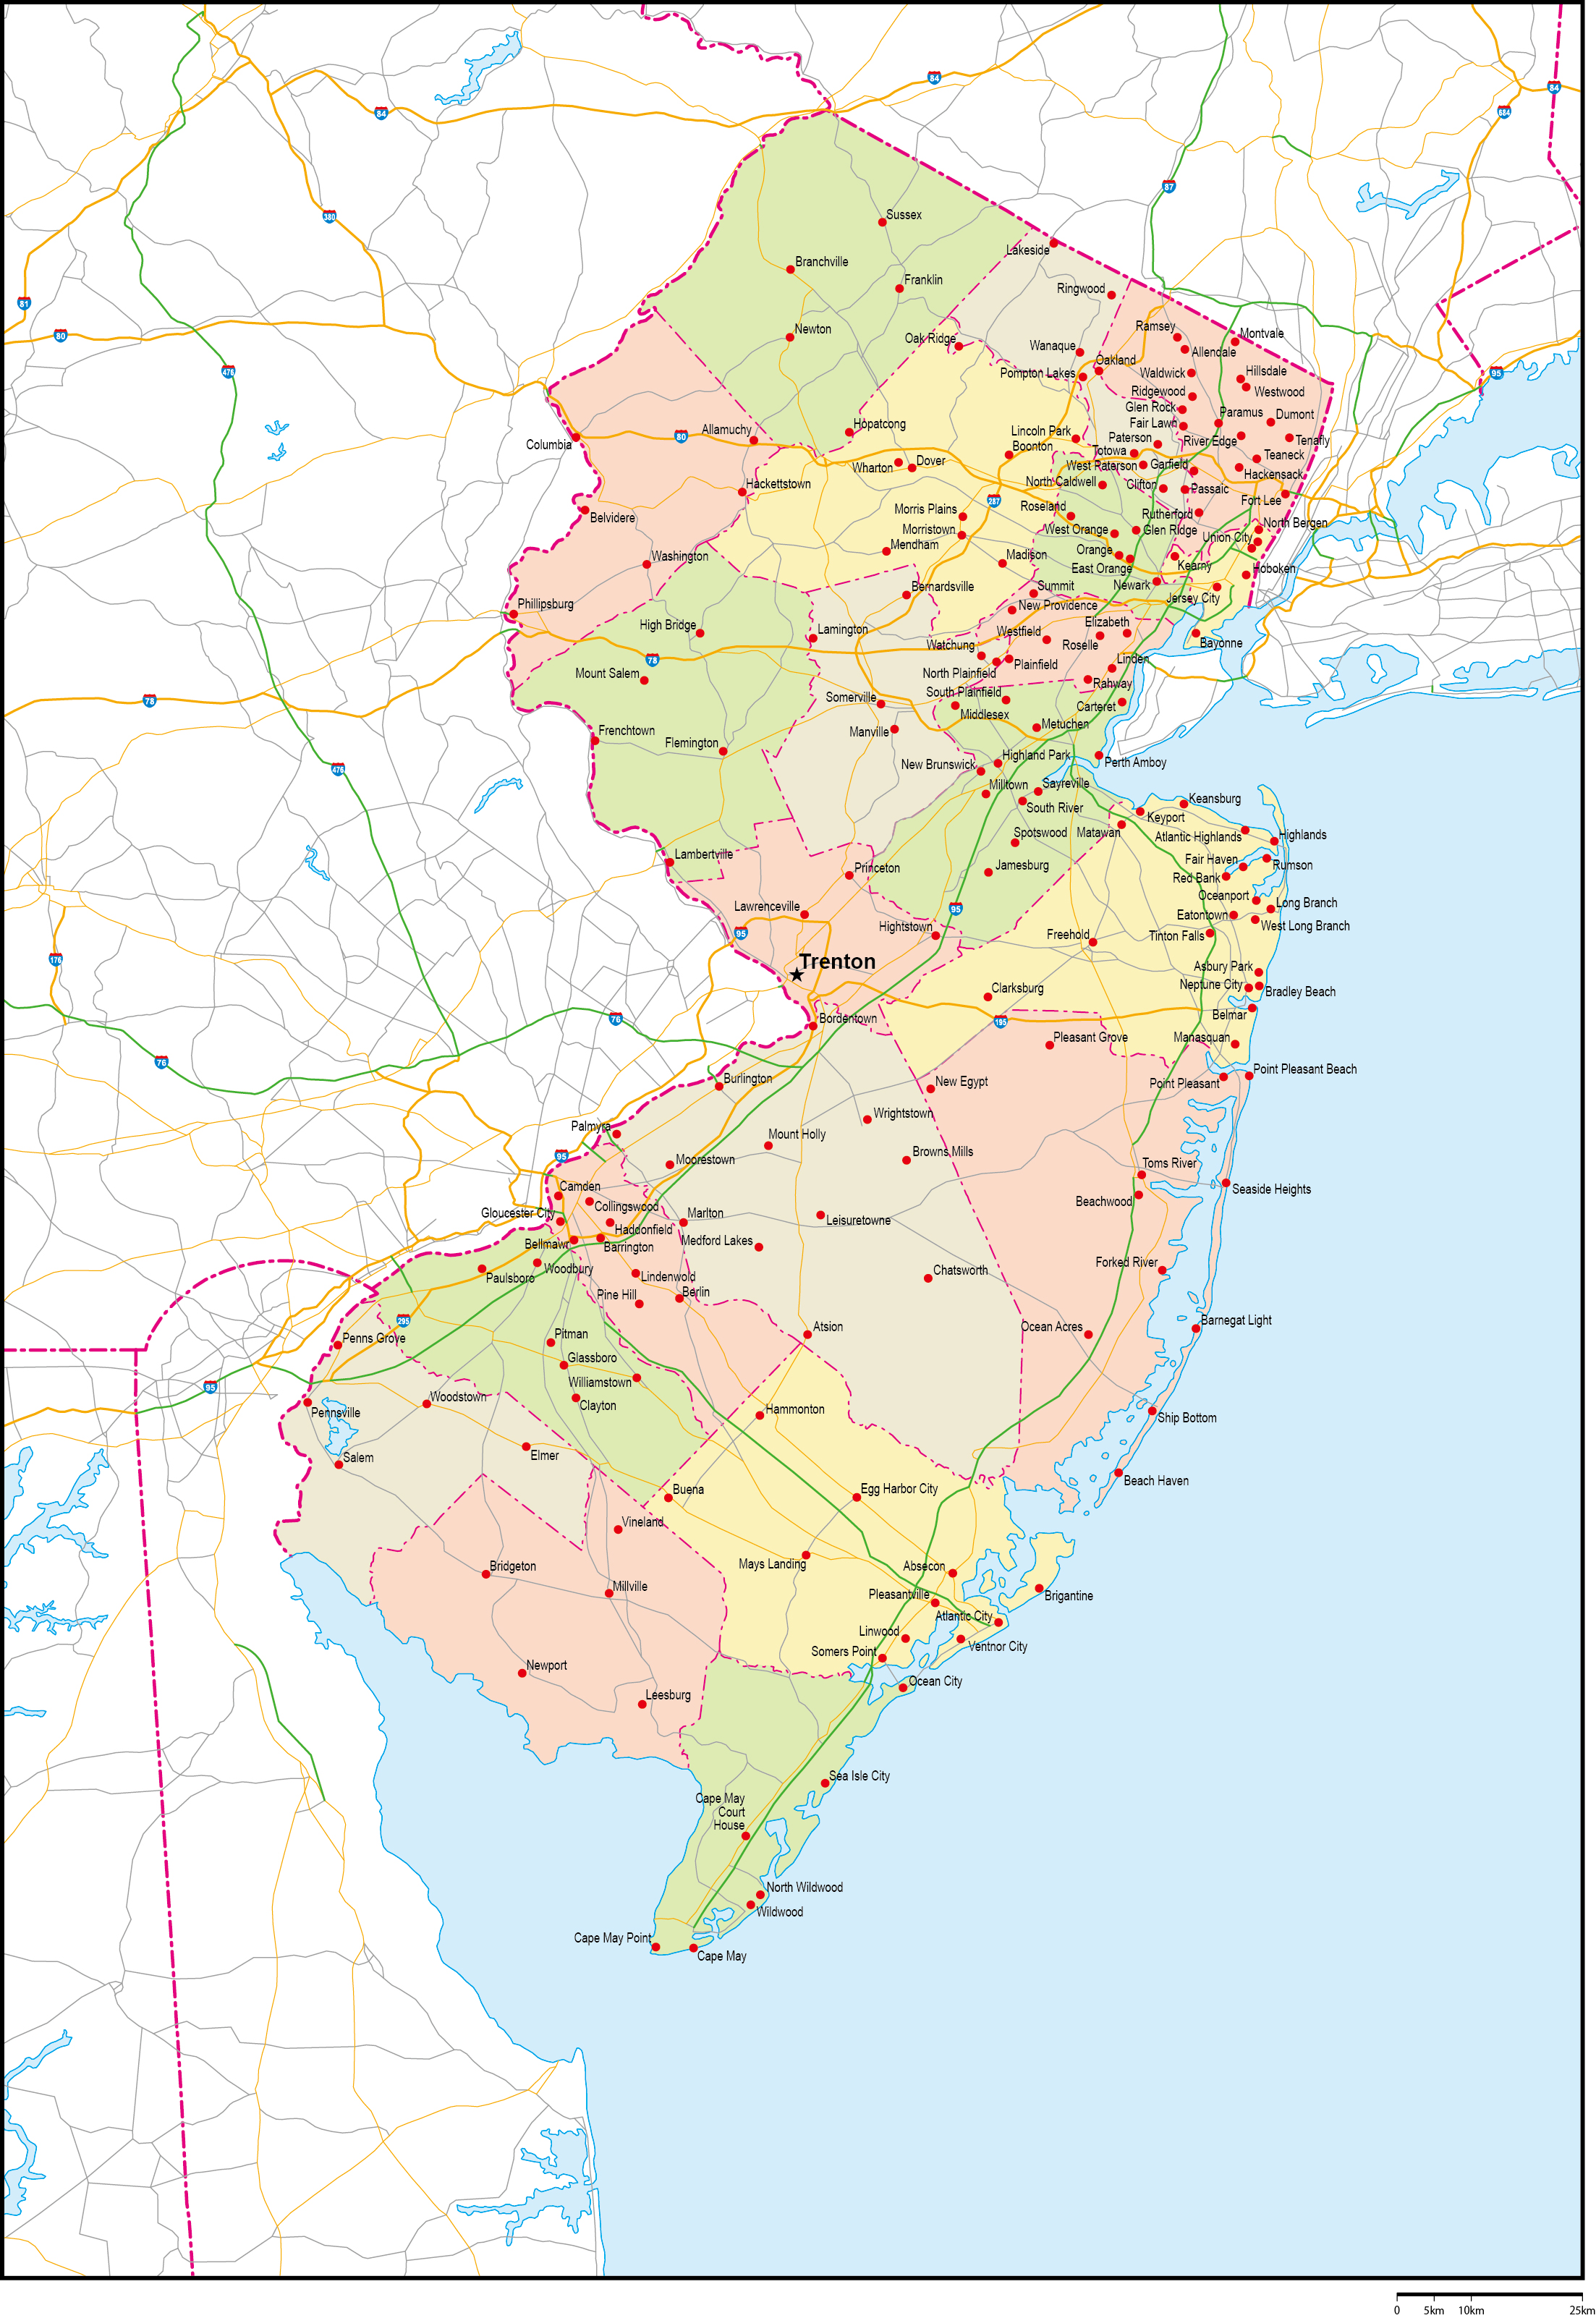 ニュージャージー州郡色分け地図州都・主な都市・道路あり(英語)フリーデータの画像